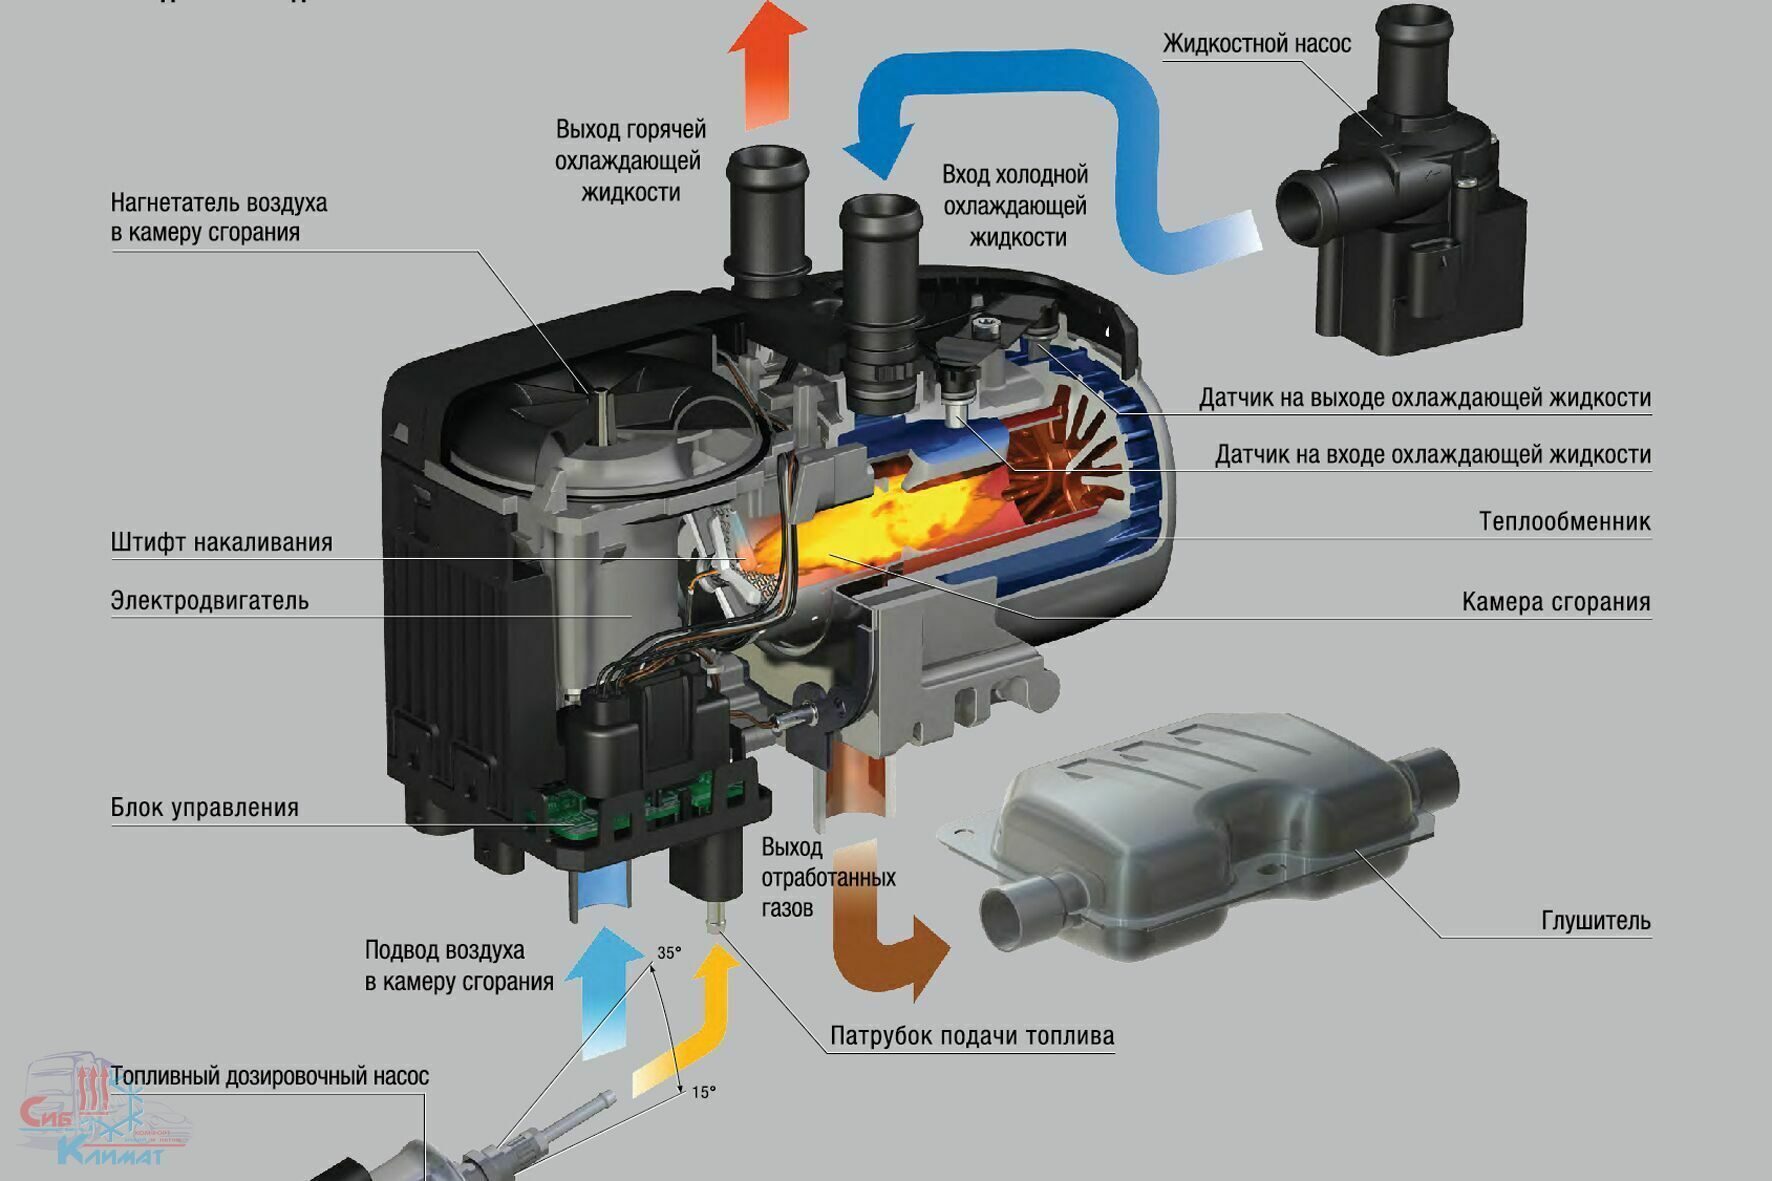 Гидроник или Вебасто сравнение систем отопления для автомобилей